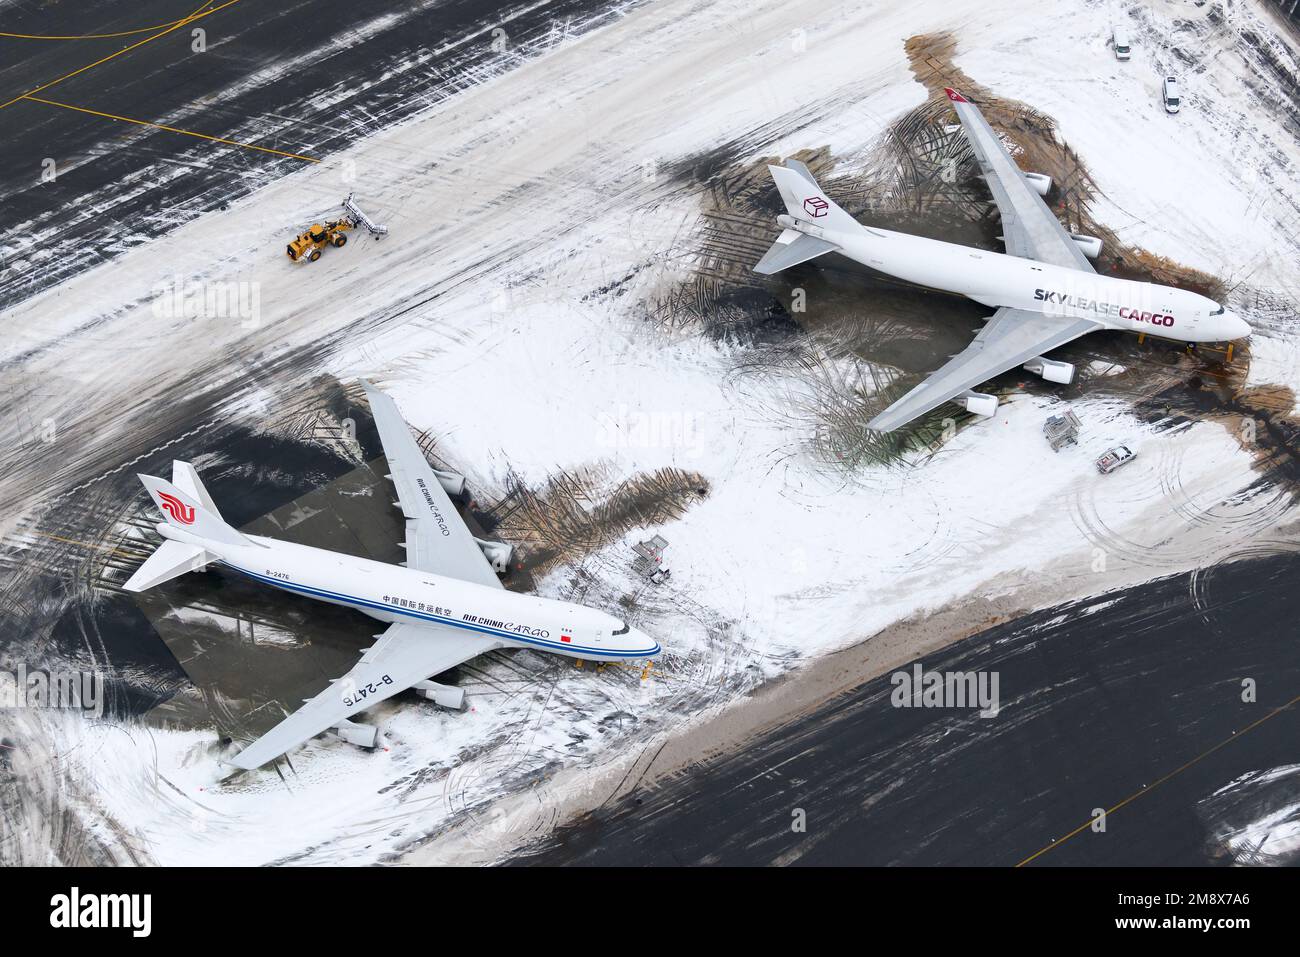 Flughafen Anchorage nach Schneesturm mit zwei Frachtflugzeugen der Boeing 747. Air China Cargo und Sky Lease Cargo 747F Flugzeug im Schneefallbetrieb. Stockfoto